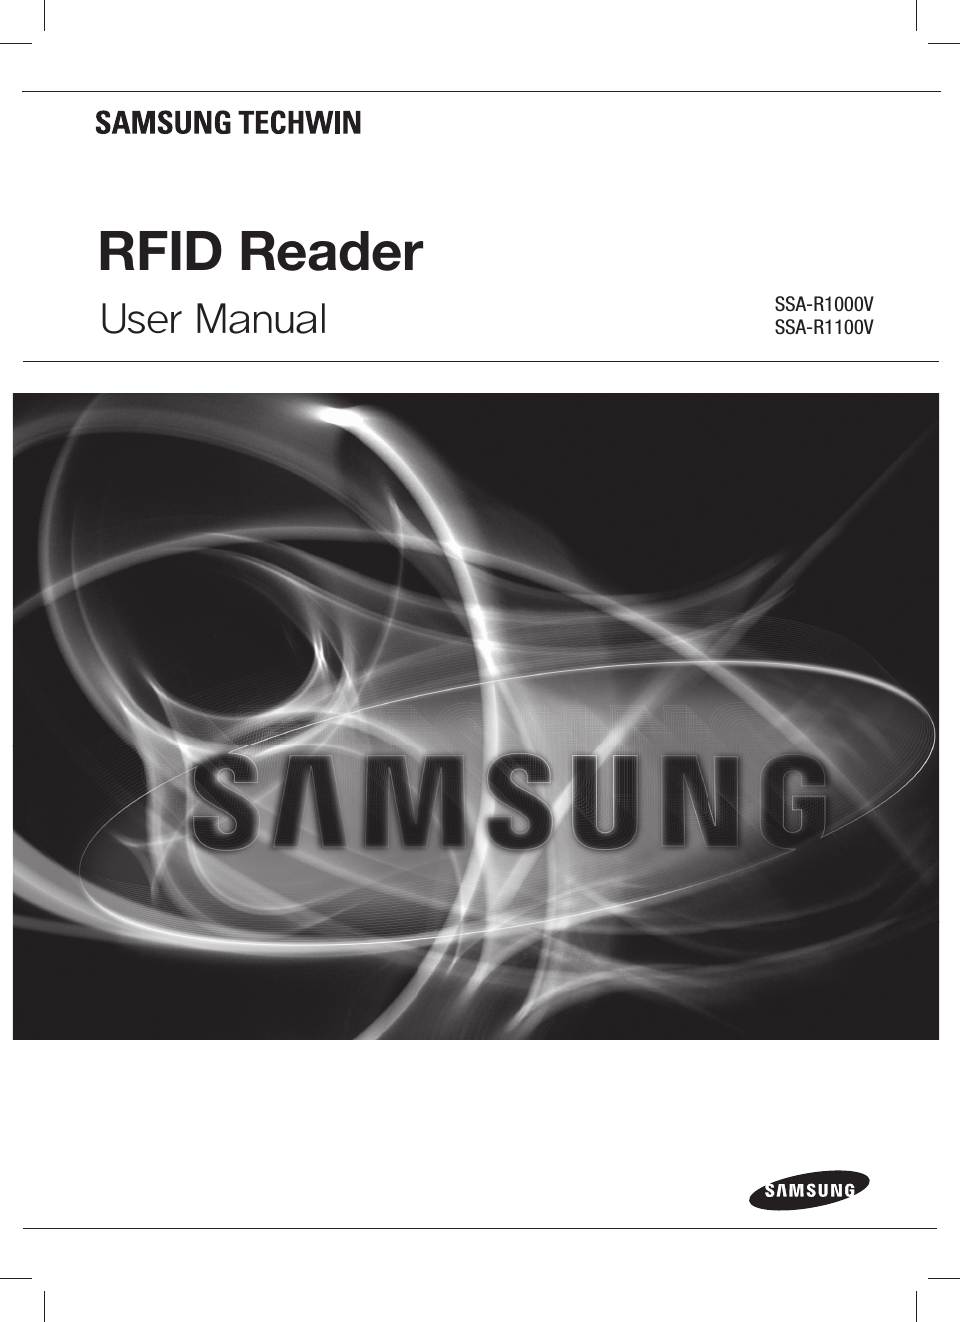 RFID ReaderUser Manual SSA-R1000VSSA-R1100V